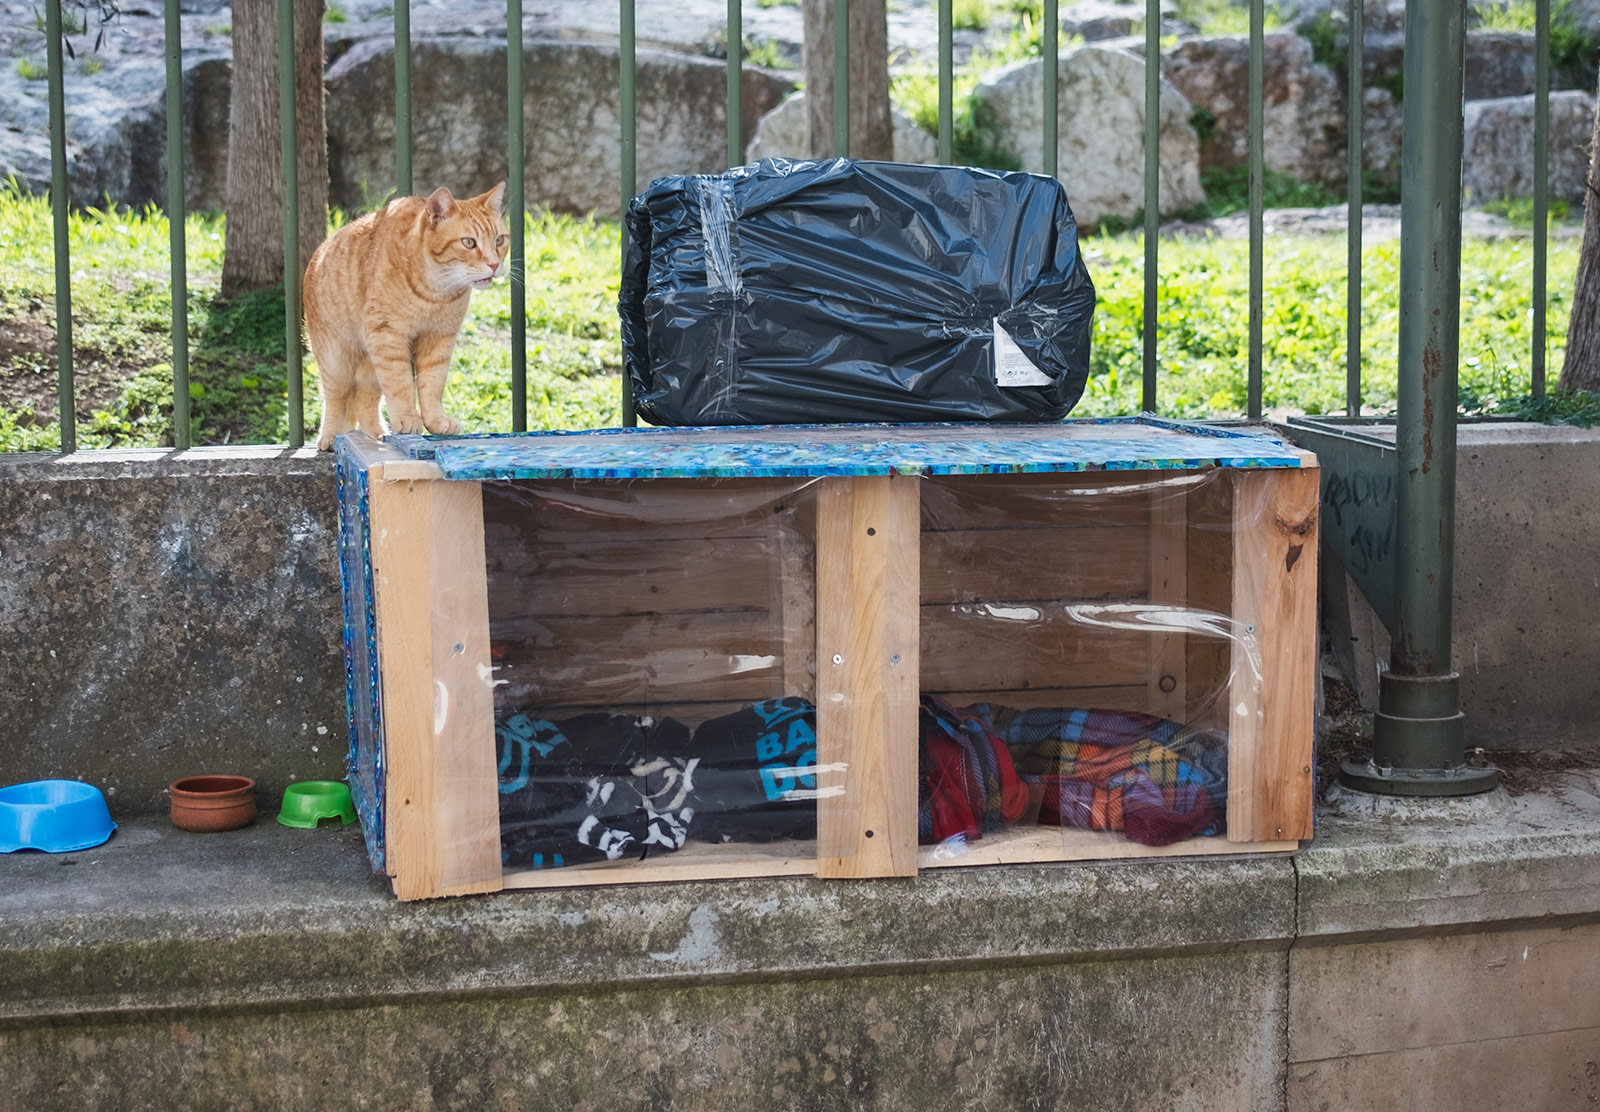 Cat standing on makeshift shelter